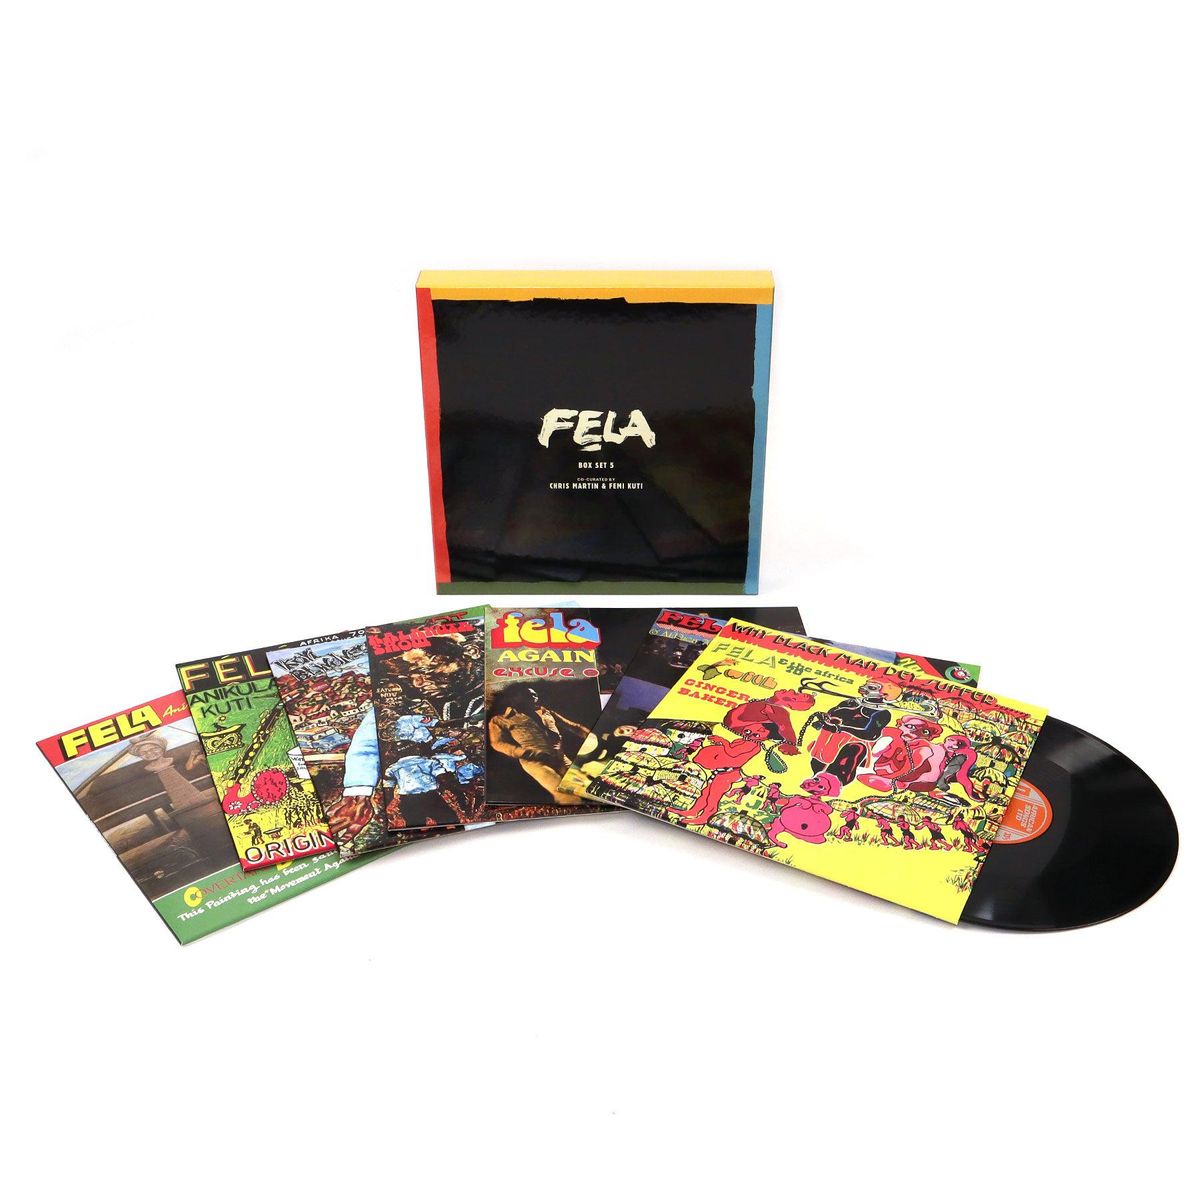 Fela Kuti Box Set